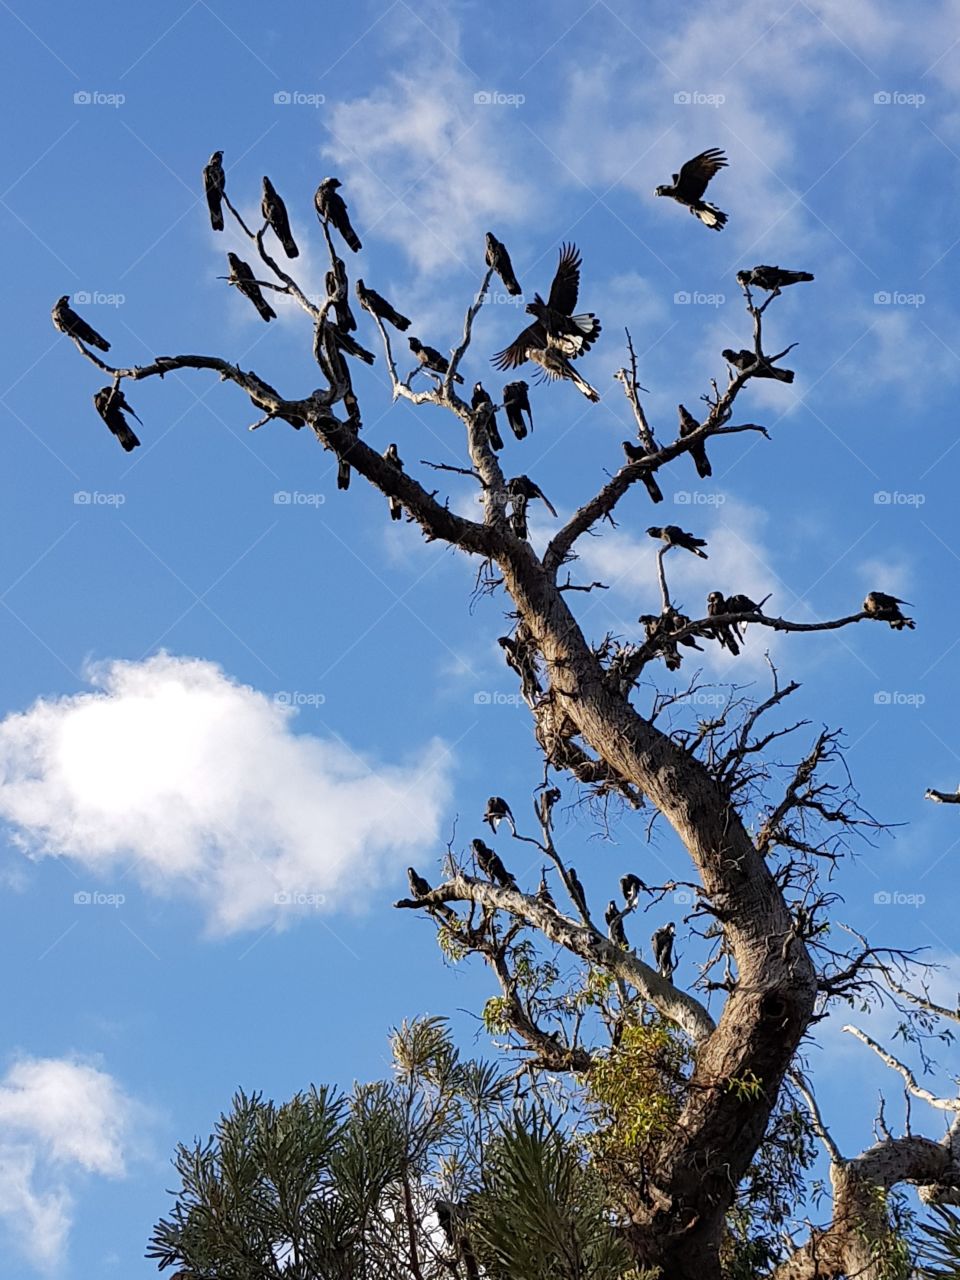 birds in a tree